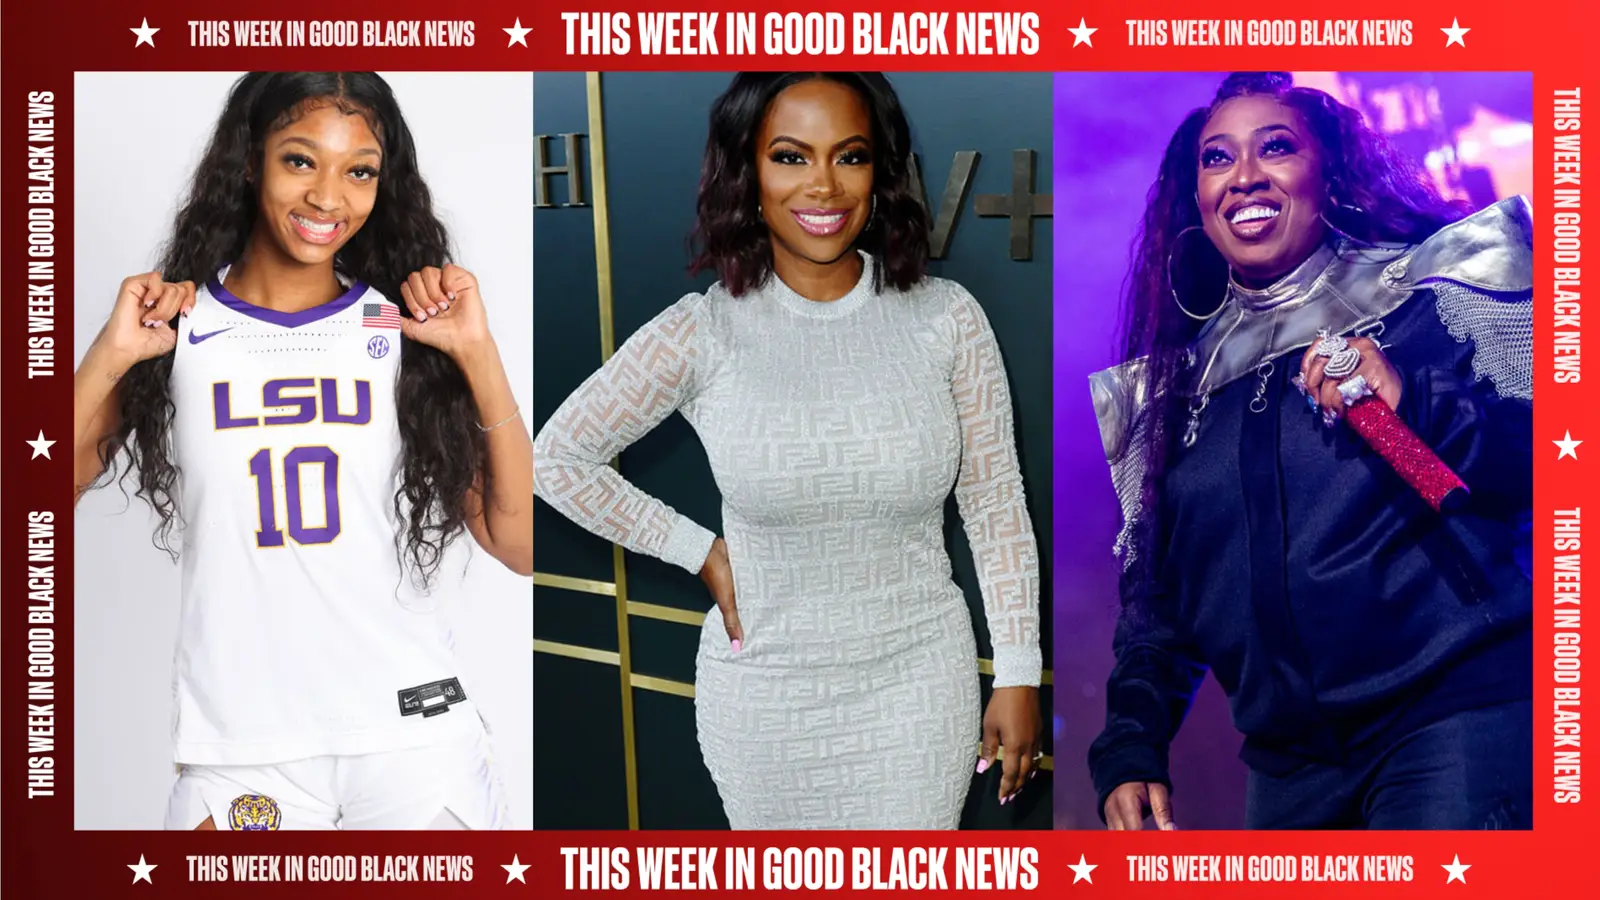 This Week In Good Black News